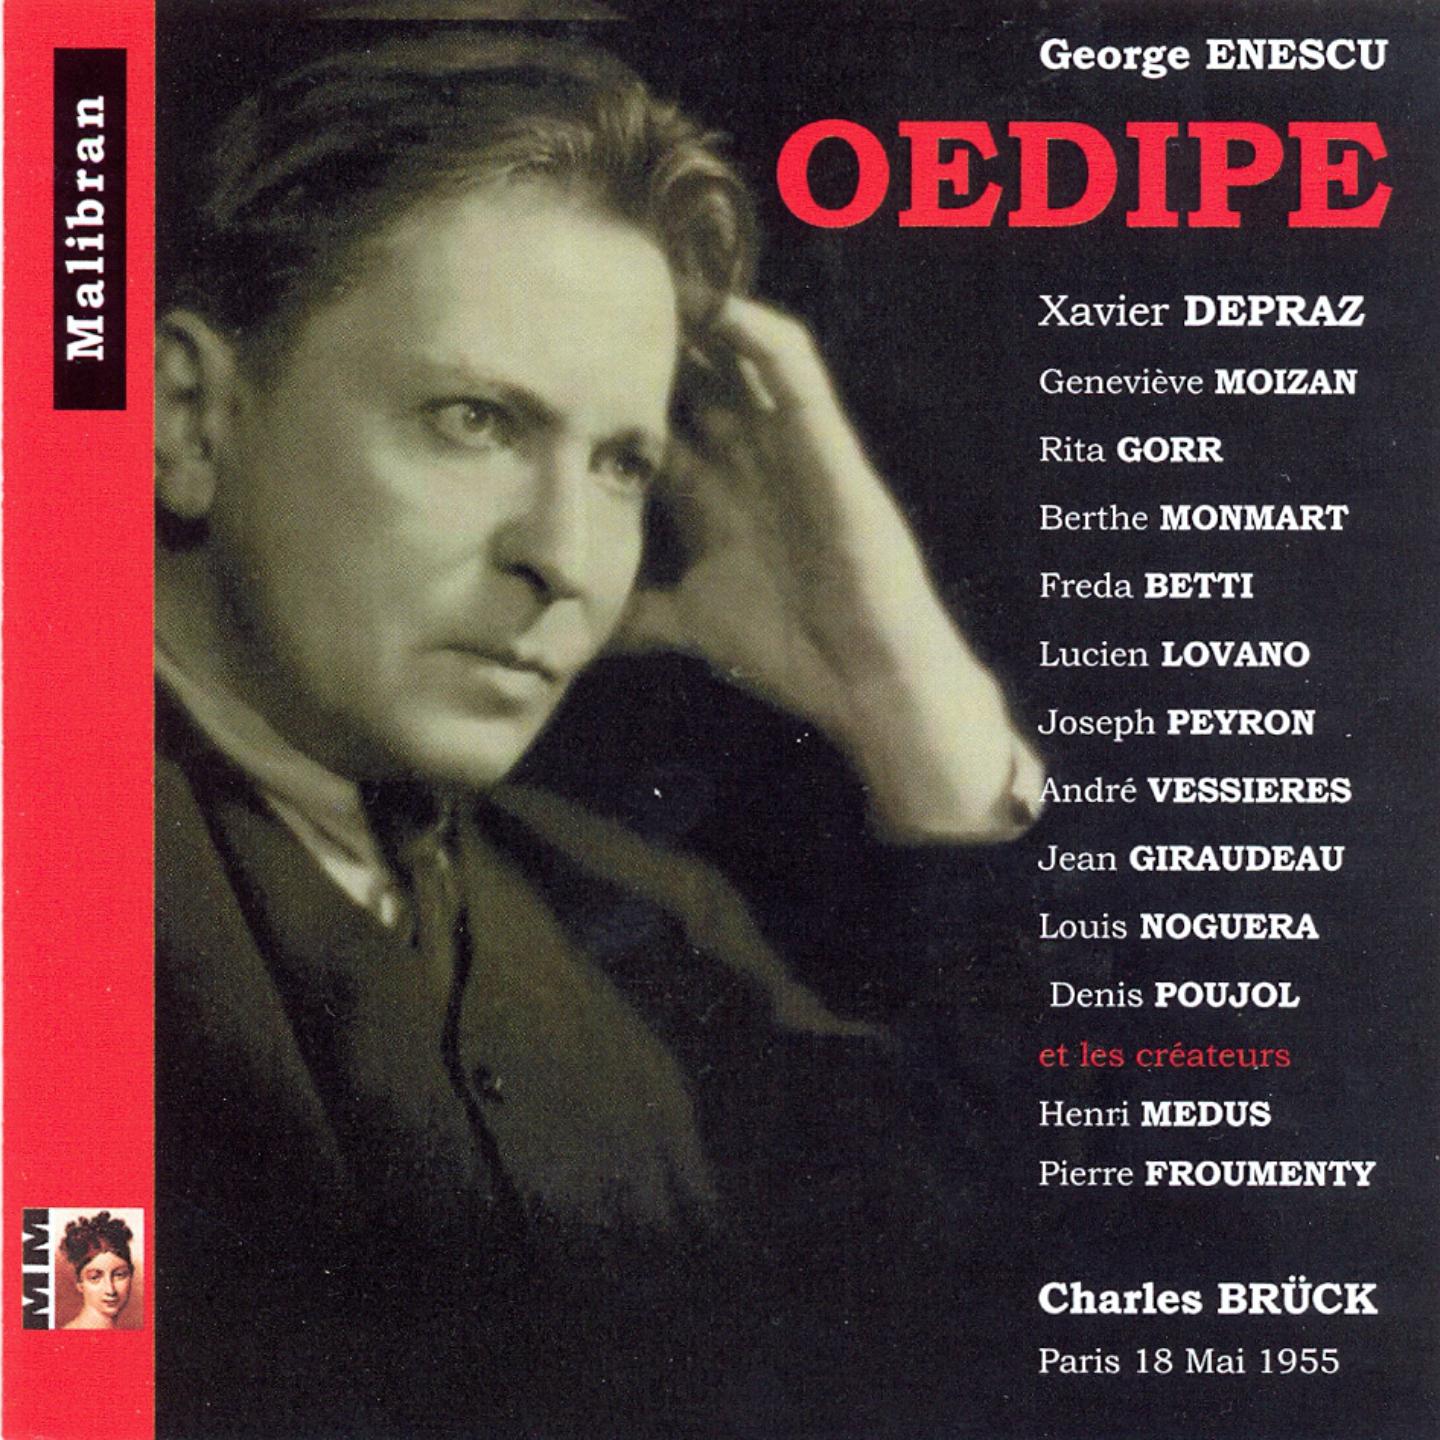 Oedipe, Act II:Interlude